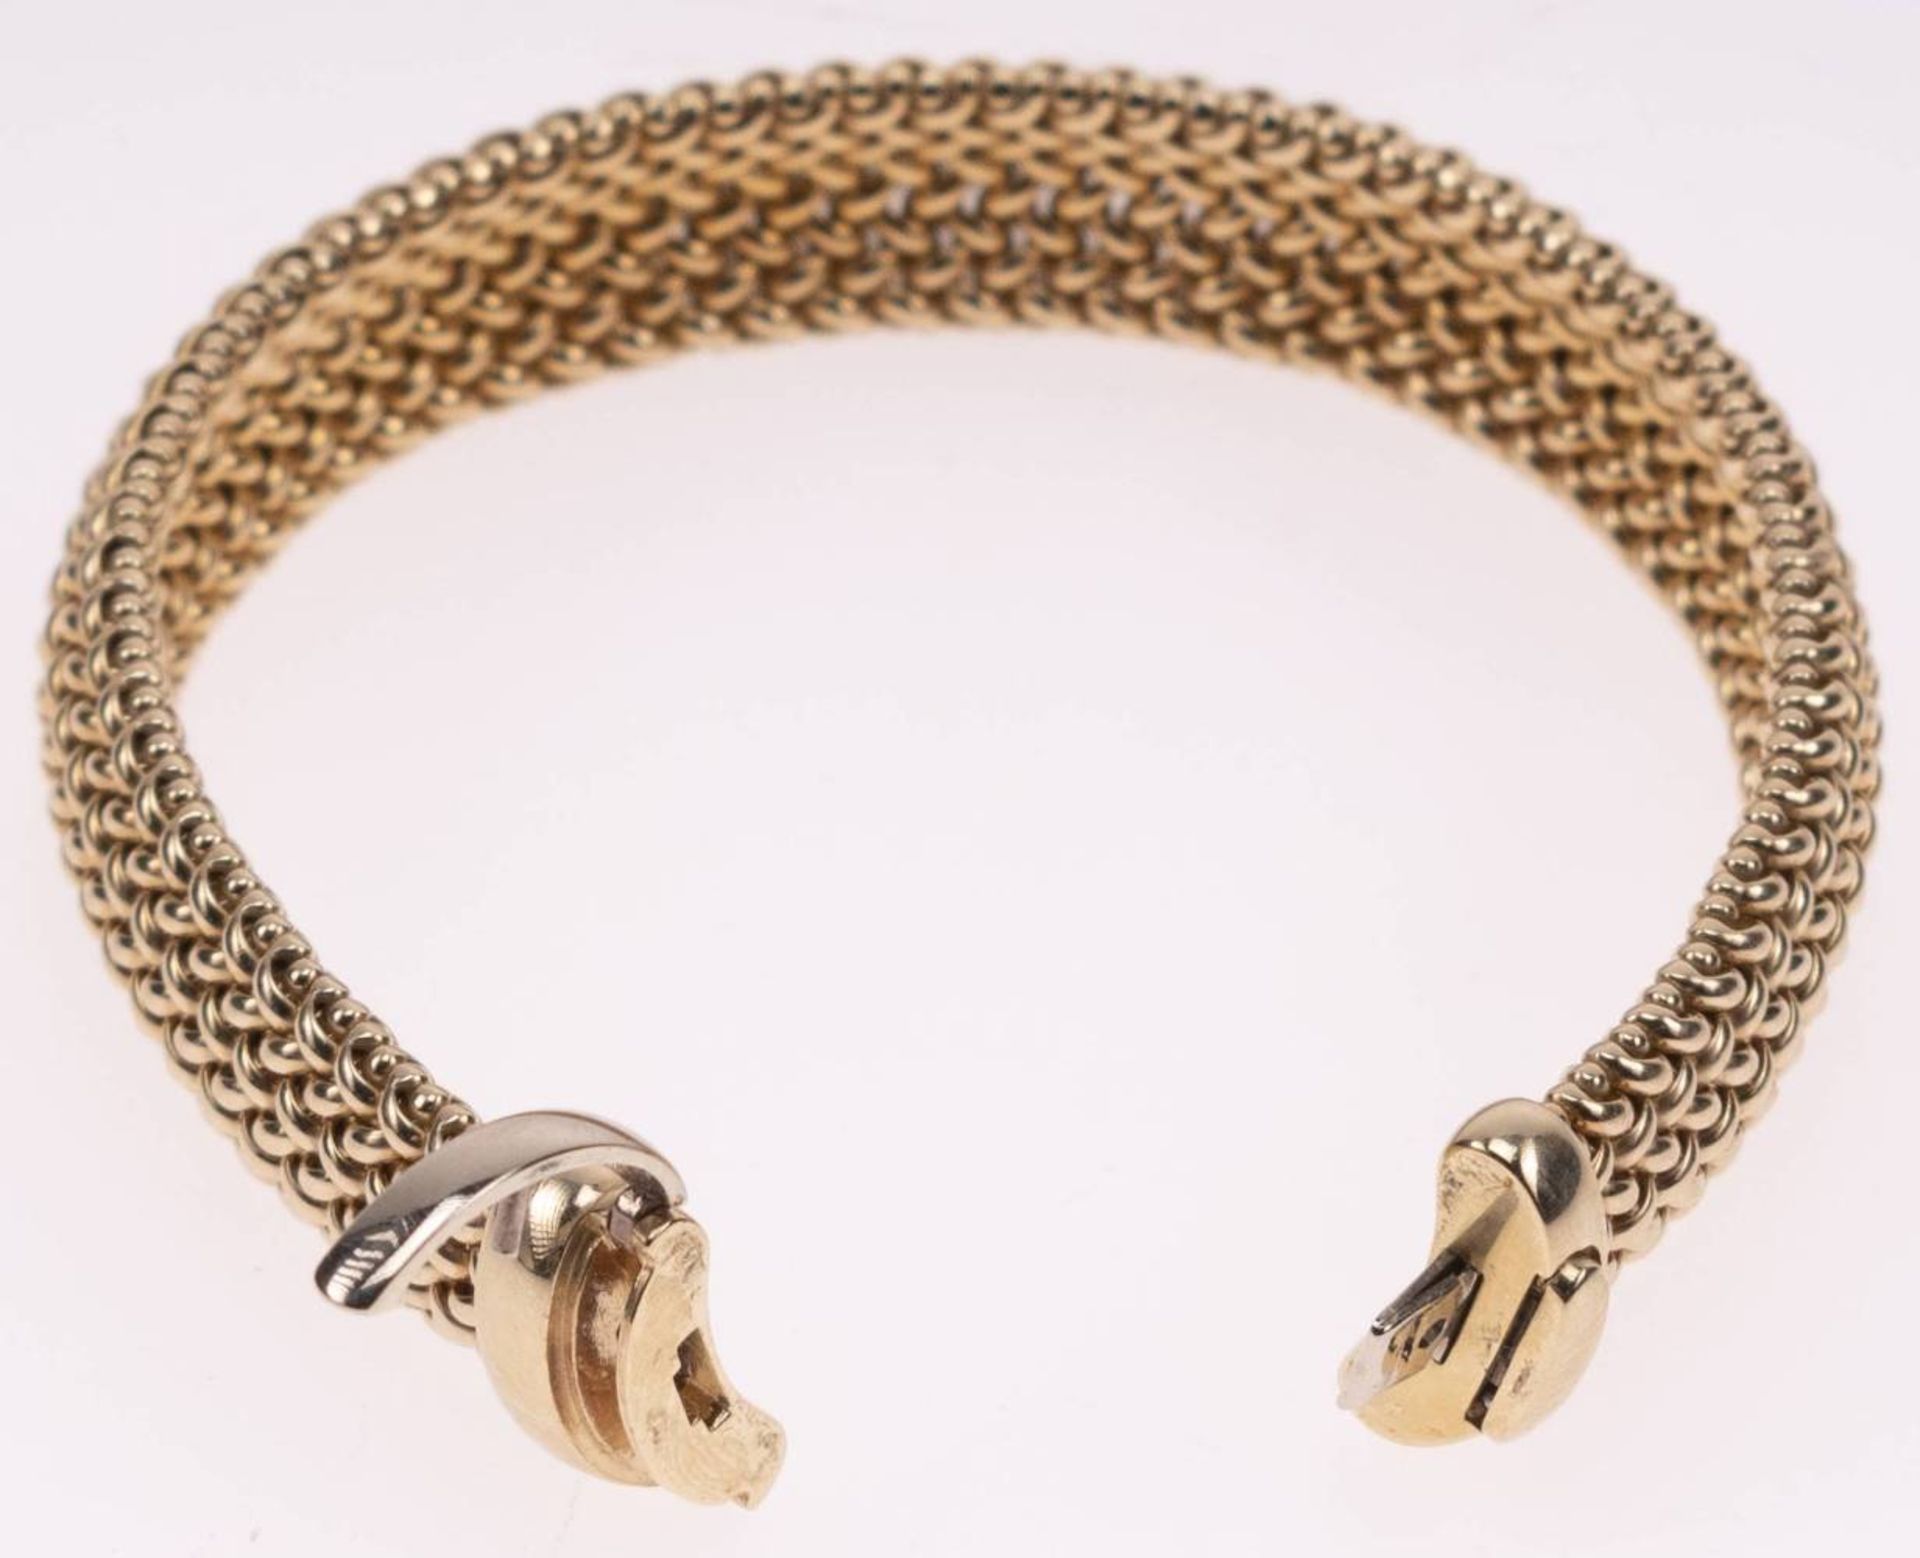 Milanaise Armband, 585 Gelbgold, Länge 19,5cm, Steckschließe mit Clipverschluss, fast ungetragen, - Bild 5 aus 6